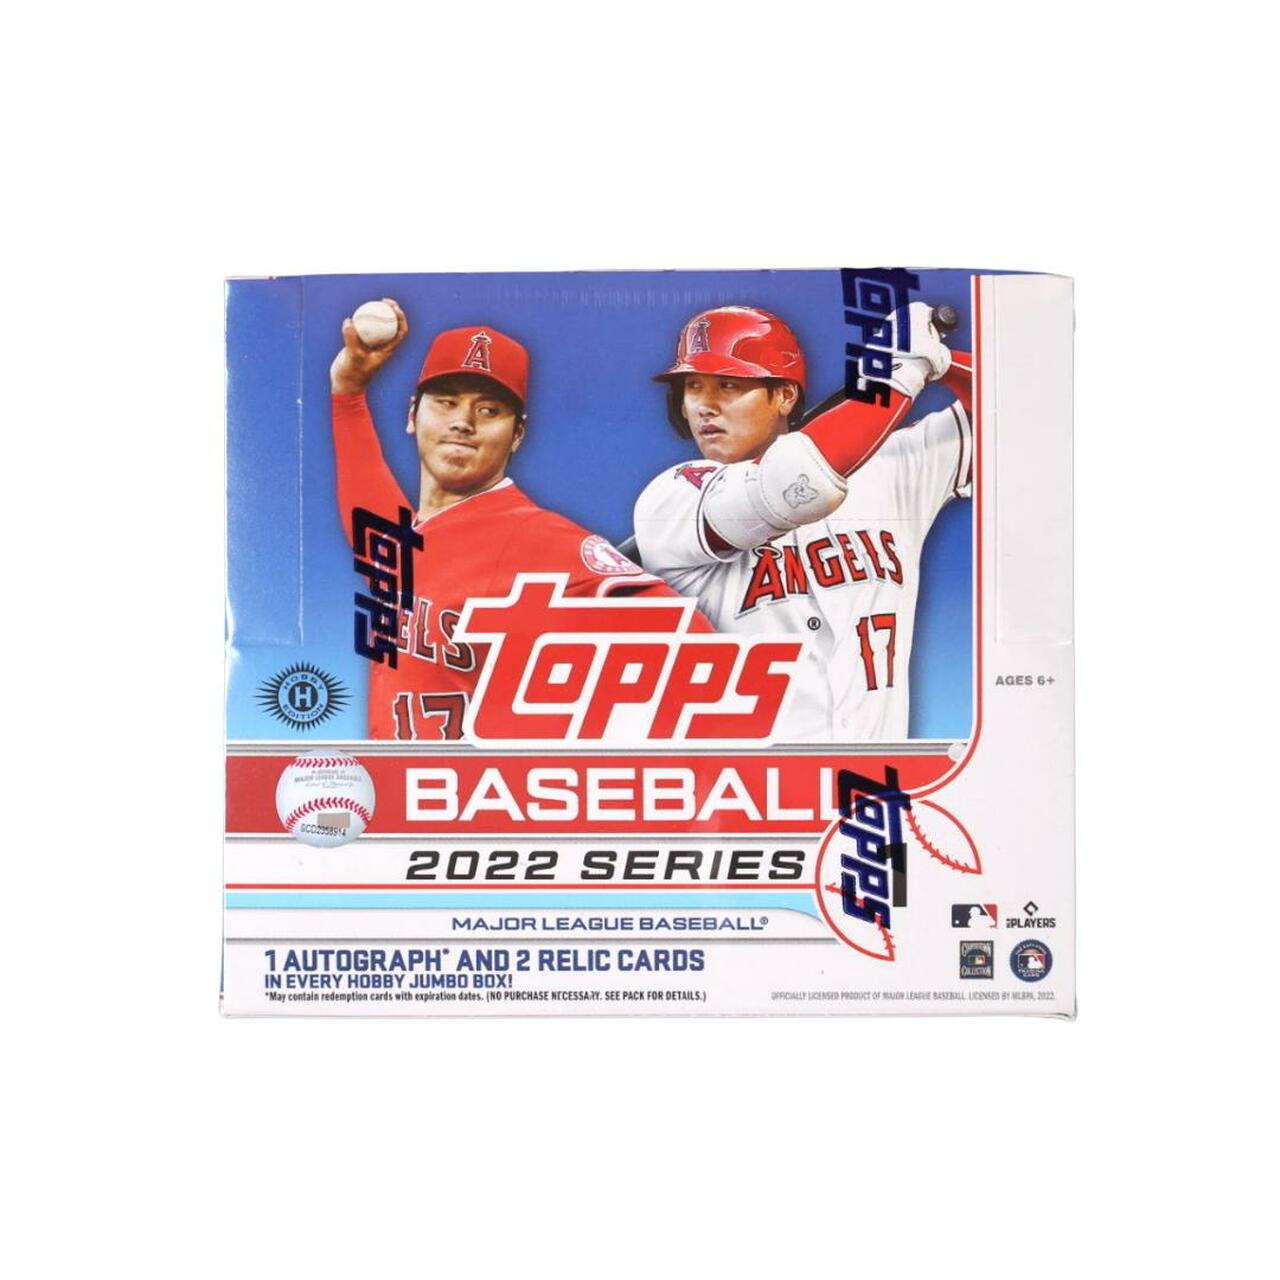 2018 Topps Series 1 Jumbo Baseball Hobby Box + 2 Topps Silver Packs